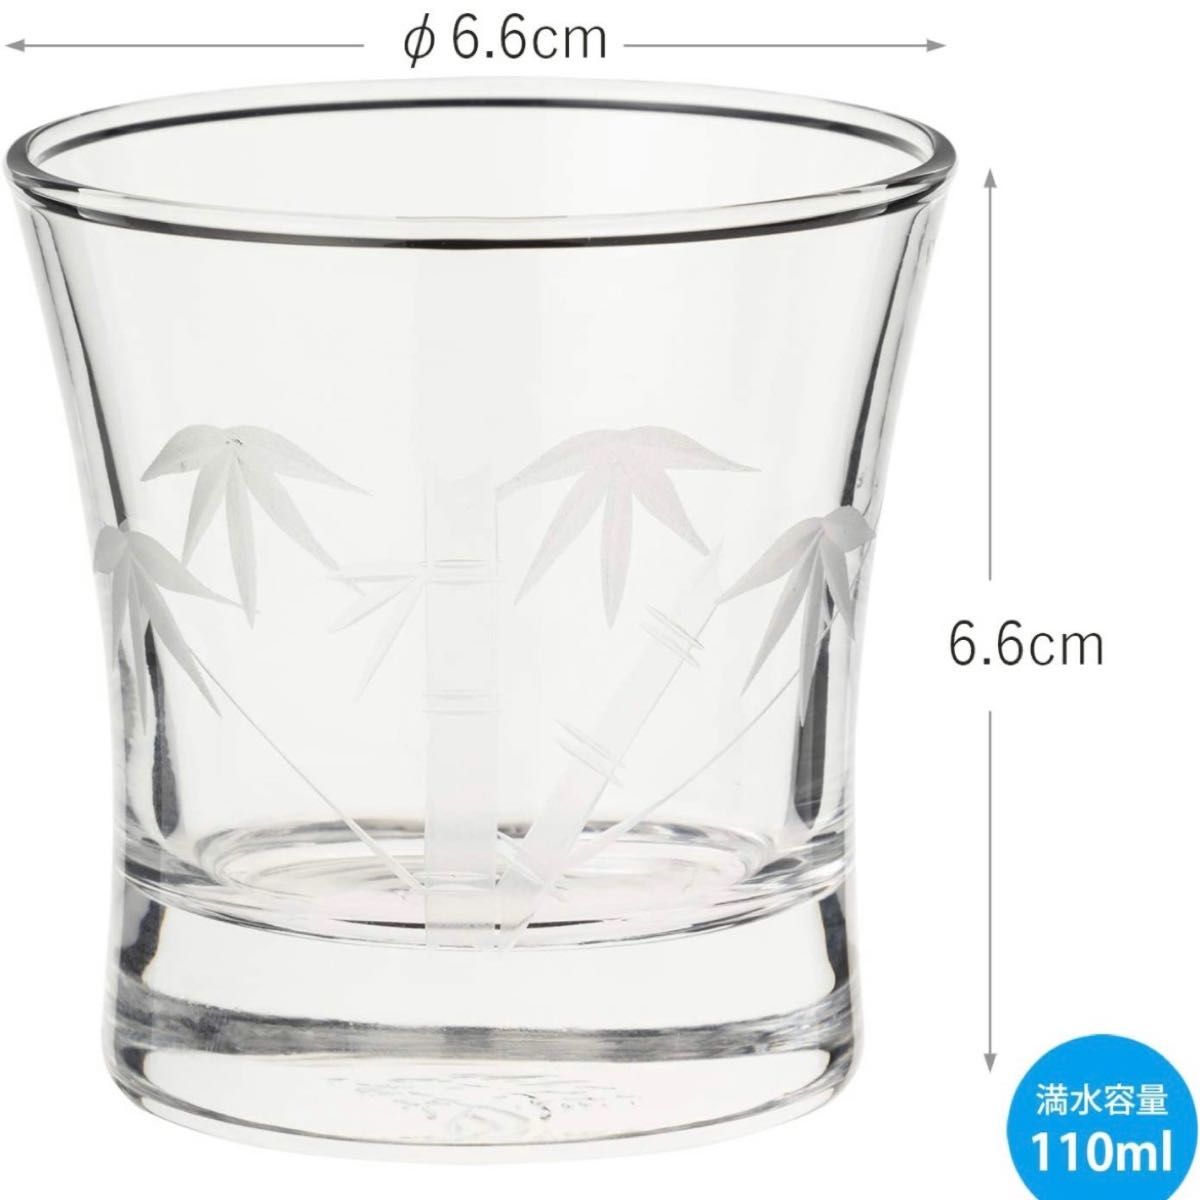 【6個】東洋佐々木ガラス 冷酒グラス クリスタルガラス グラス ガラス 切子杯 切子ガラス 竹切子 酒器 ぐい呑 お祝い 贈答品